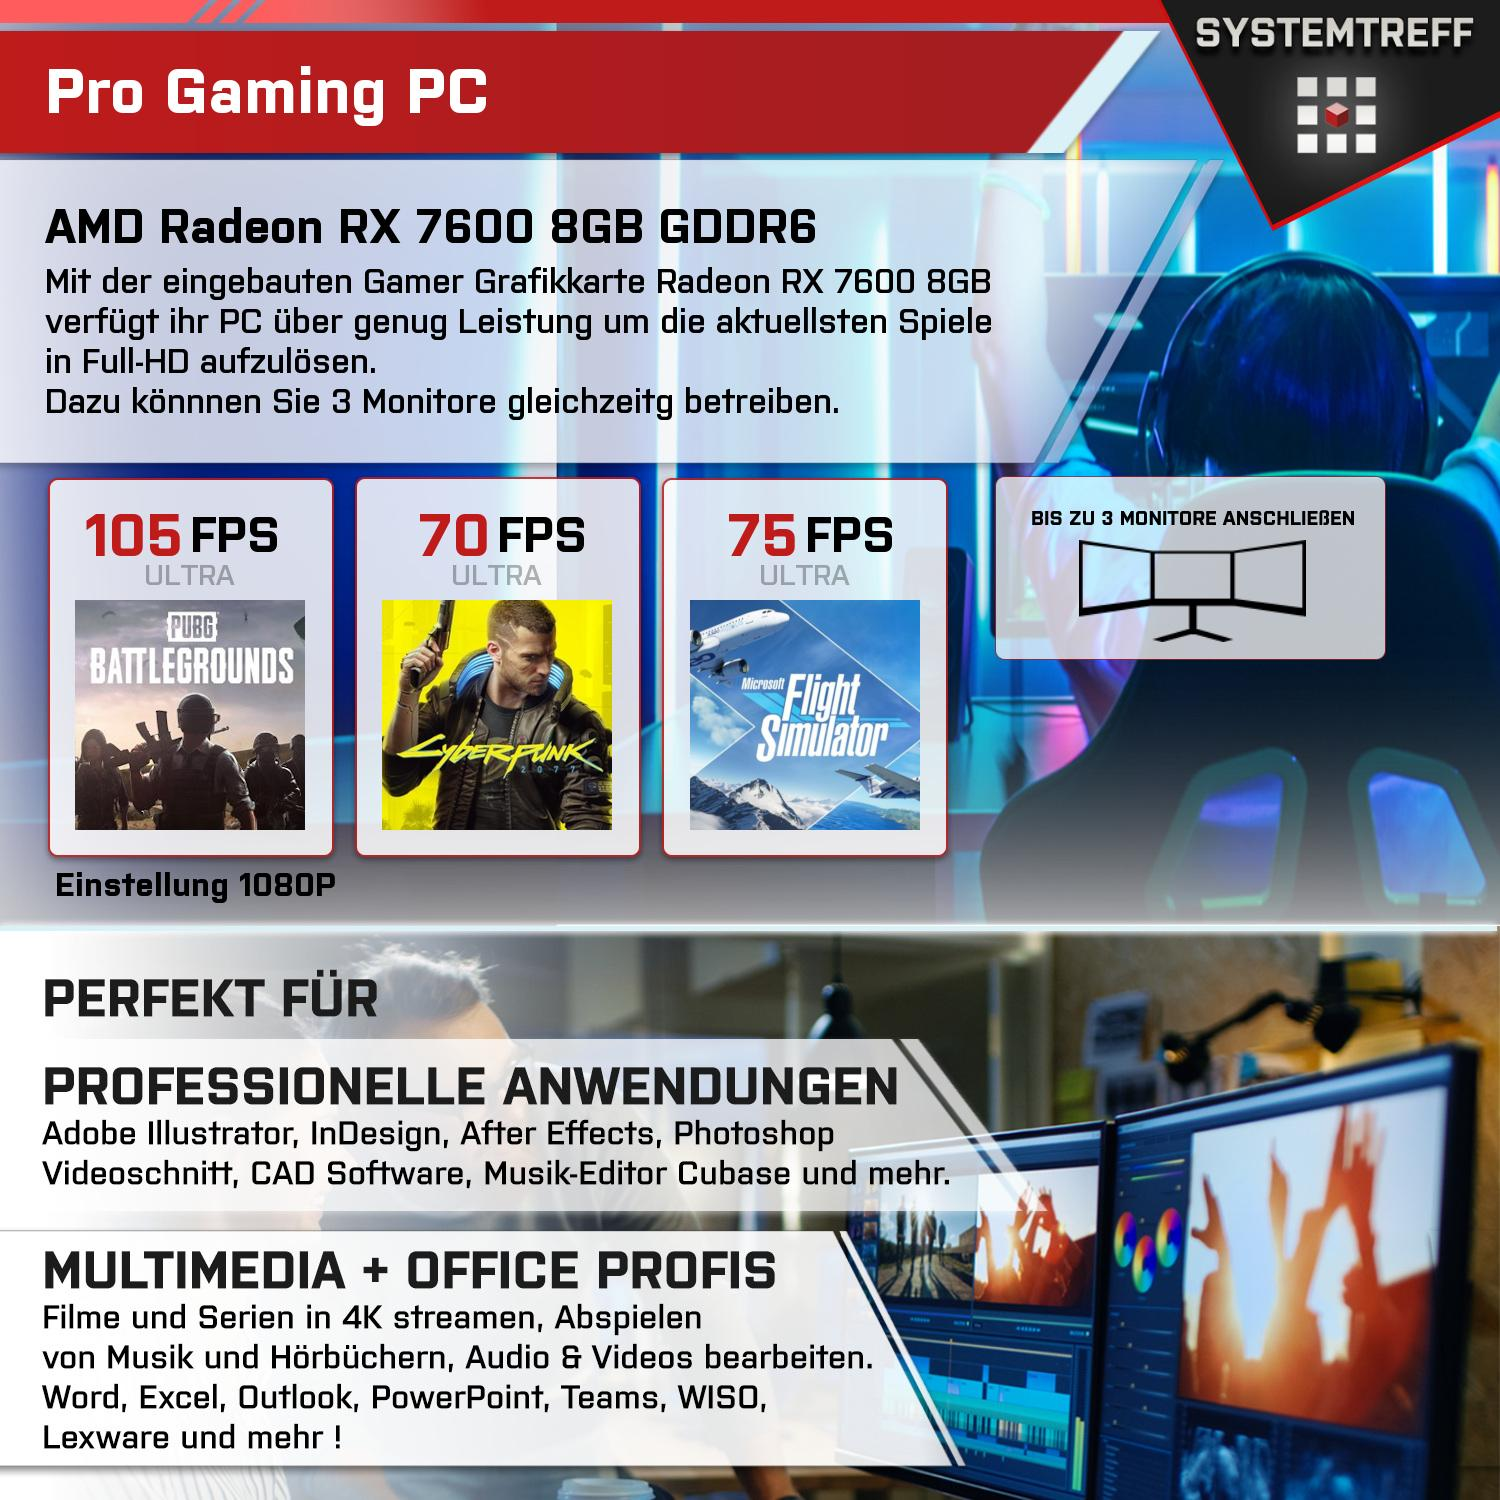 SYSTEMTREFF Gaming Komplett RAM, GB RX GDDR6, 5600X mit Komplett 7600 8 AMD GB 8GB PC Radeon mSSD, AMD 5600X, 1000 Prozessor, 5 GB 16 Ryzen